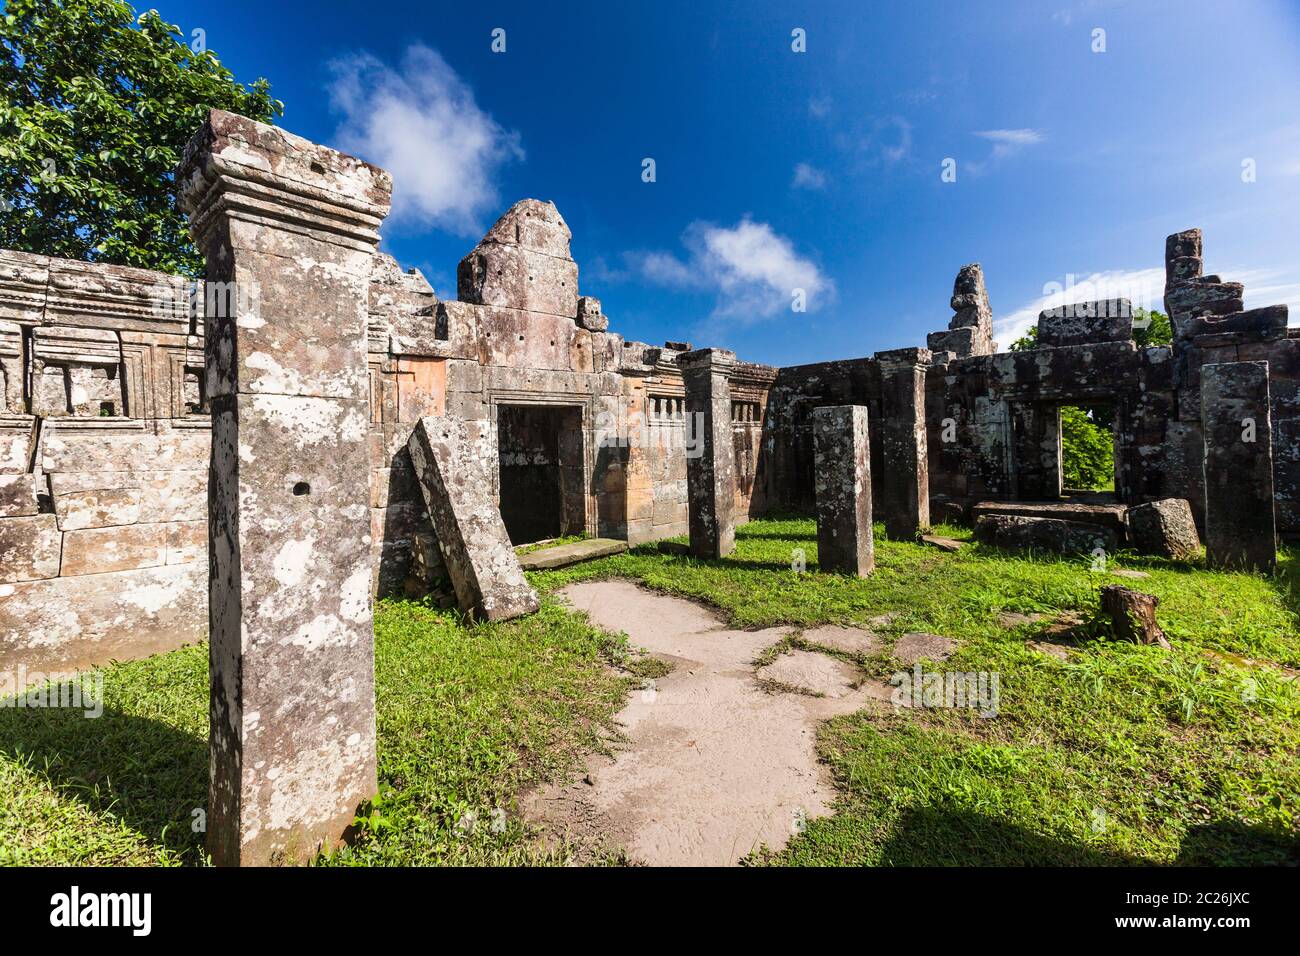 Tempio di Preah Vihear, cortile del tempio principale, edificio principale, santuario principale, tempio indù dell'antico Impero Khmer, Cambogia, Asia sudorientale, Asia Foto Stock